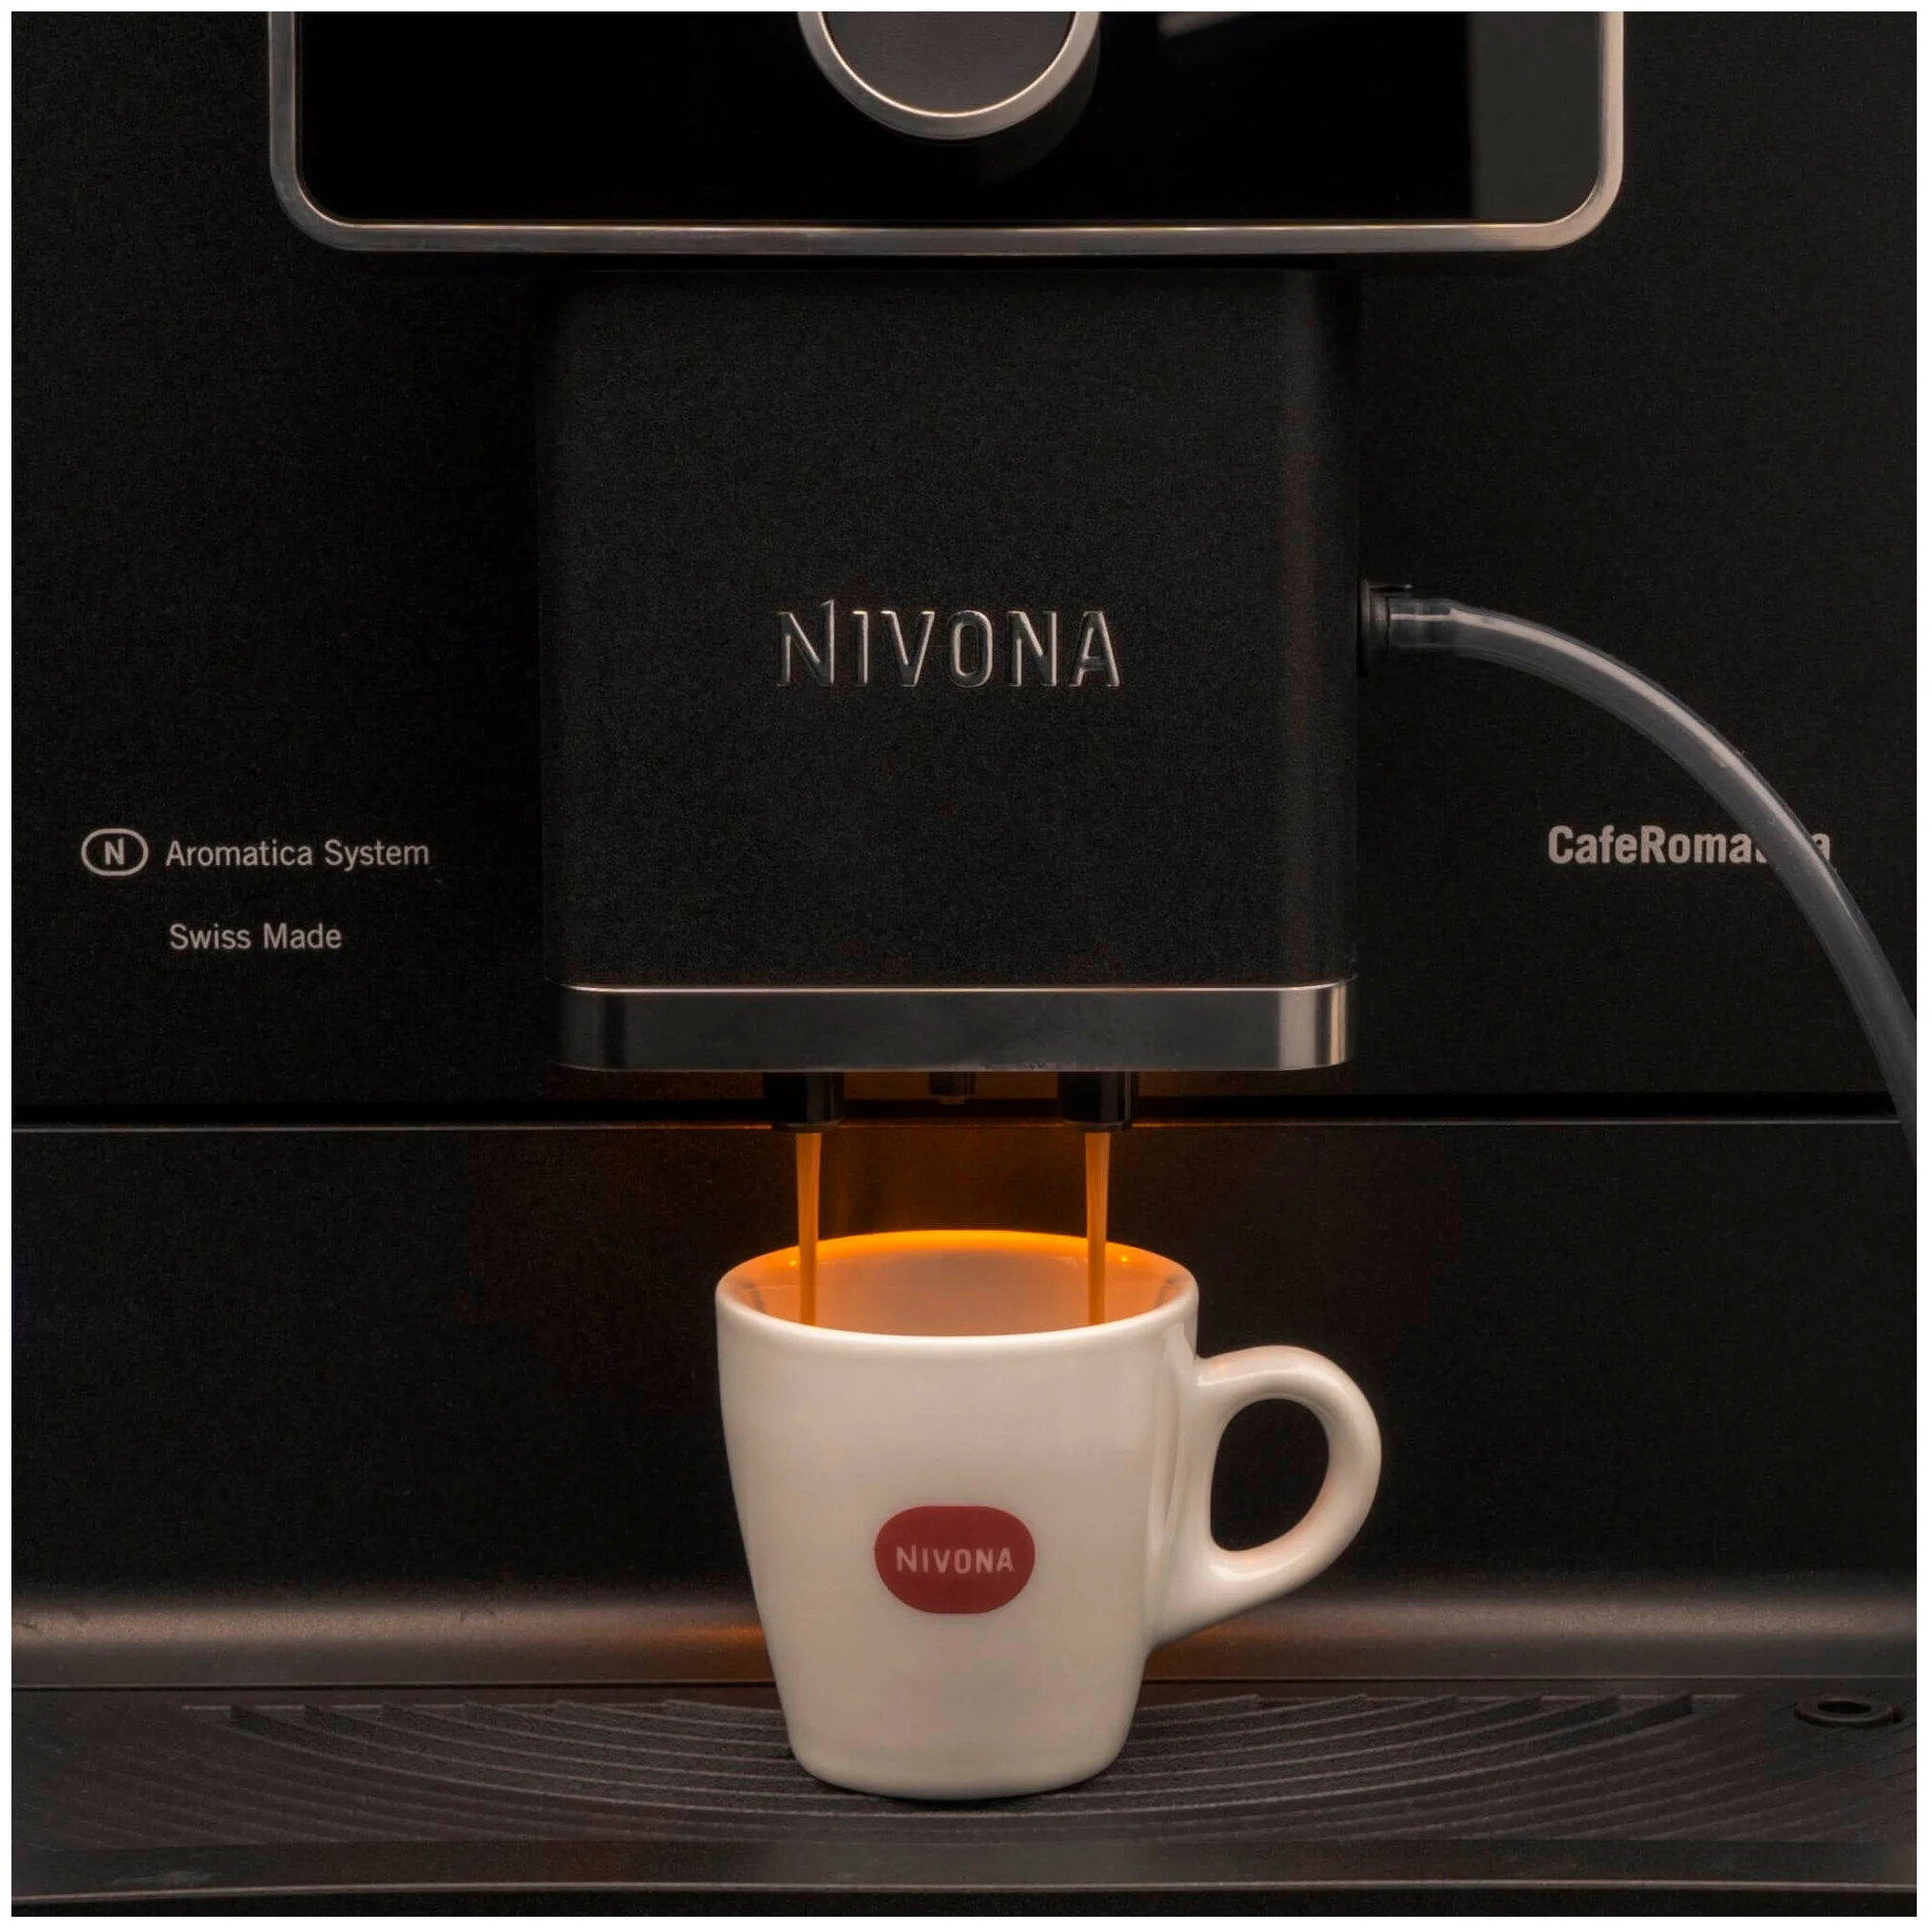 Nivona CafeRomatica 960 - настройки: температура кофе, крепость кофе, объем порции горячей воды, жесткость воды